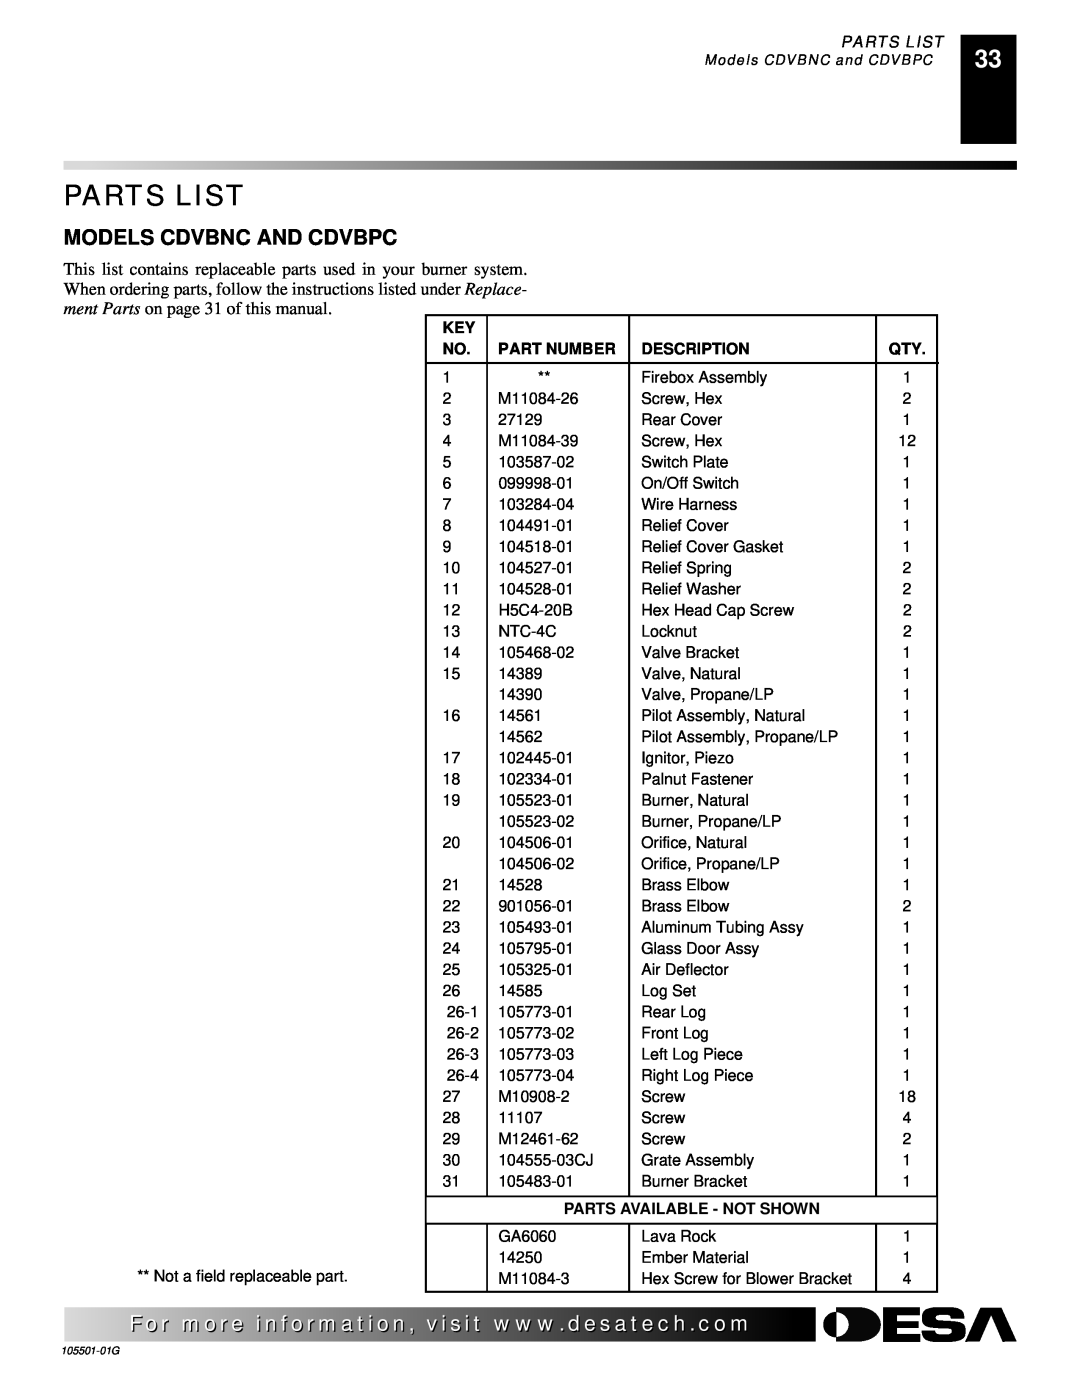 Desa Tech CDVBPC, CDVBNC manual Models Cdvbnc And Cdvbpc, Parts List, Part Number, Description, Parts Available - Not Shown 